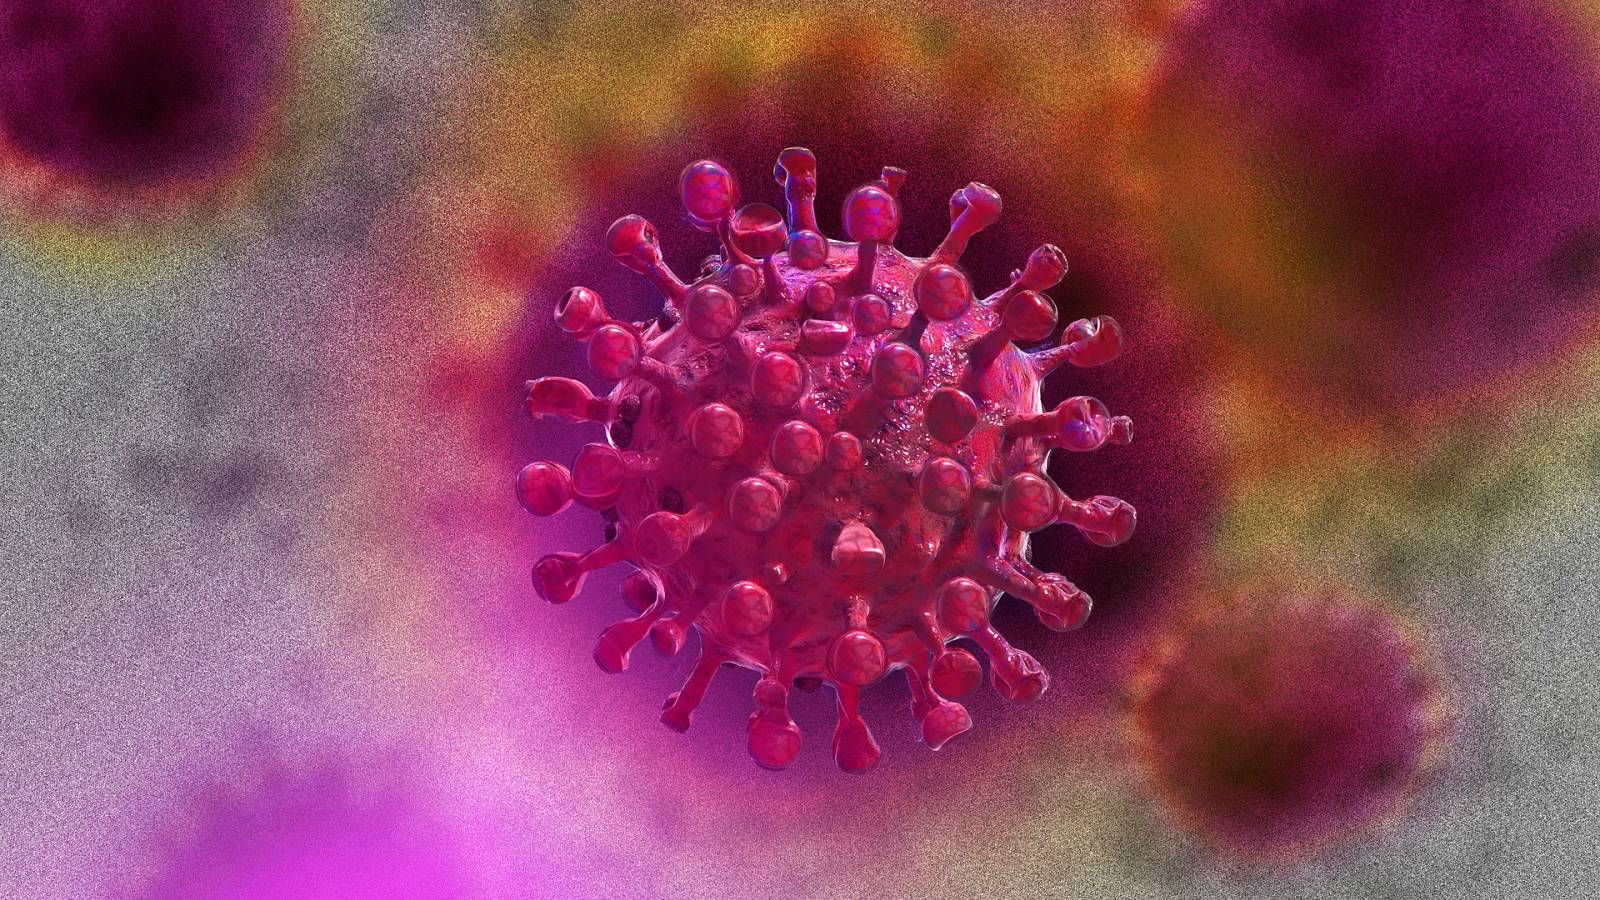 Dichiarazione preoccupante dell’OMS Il coronavirus continua ad evolversi